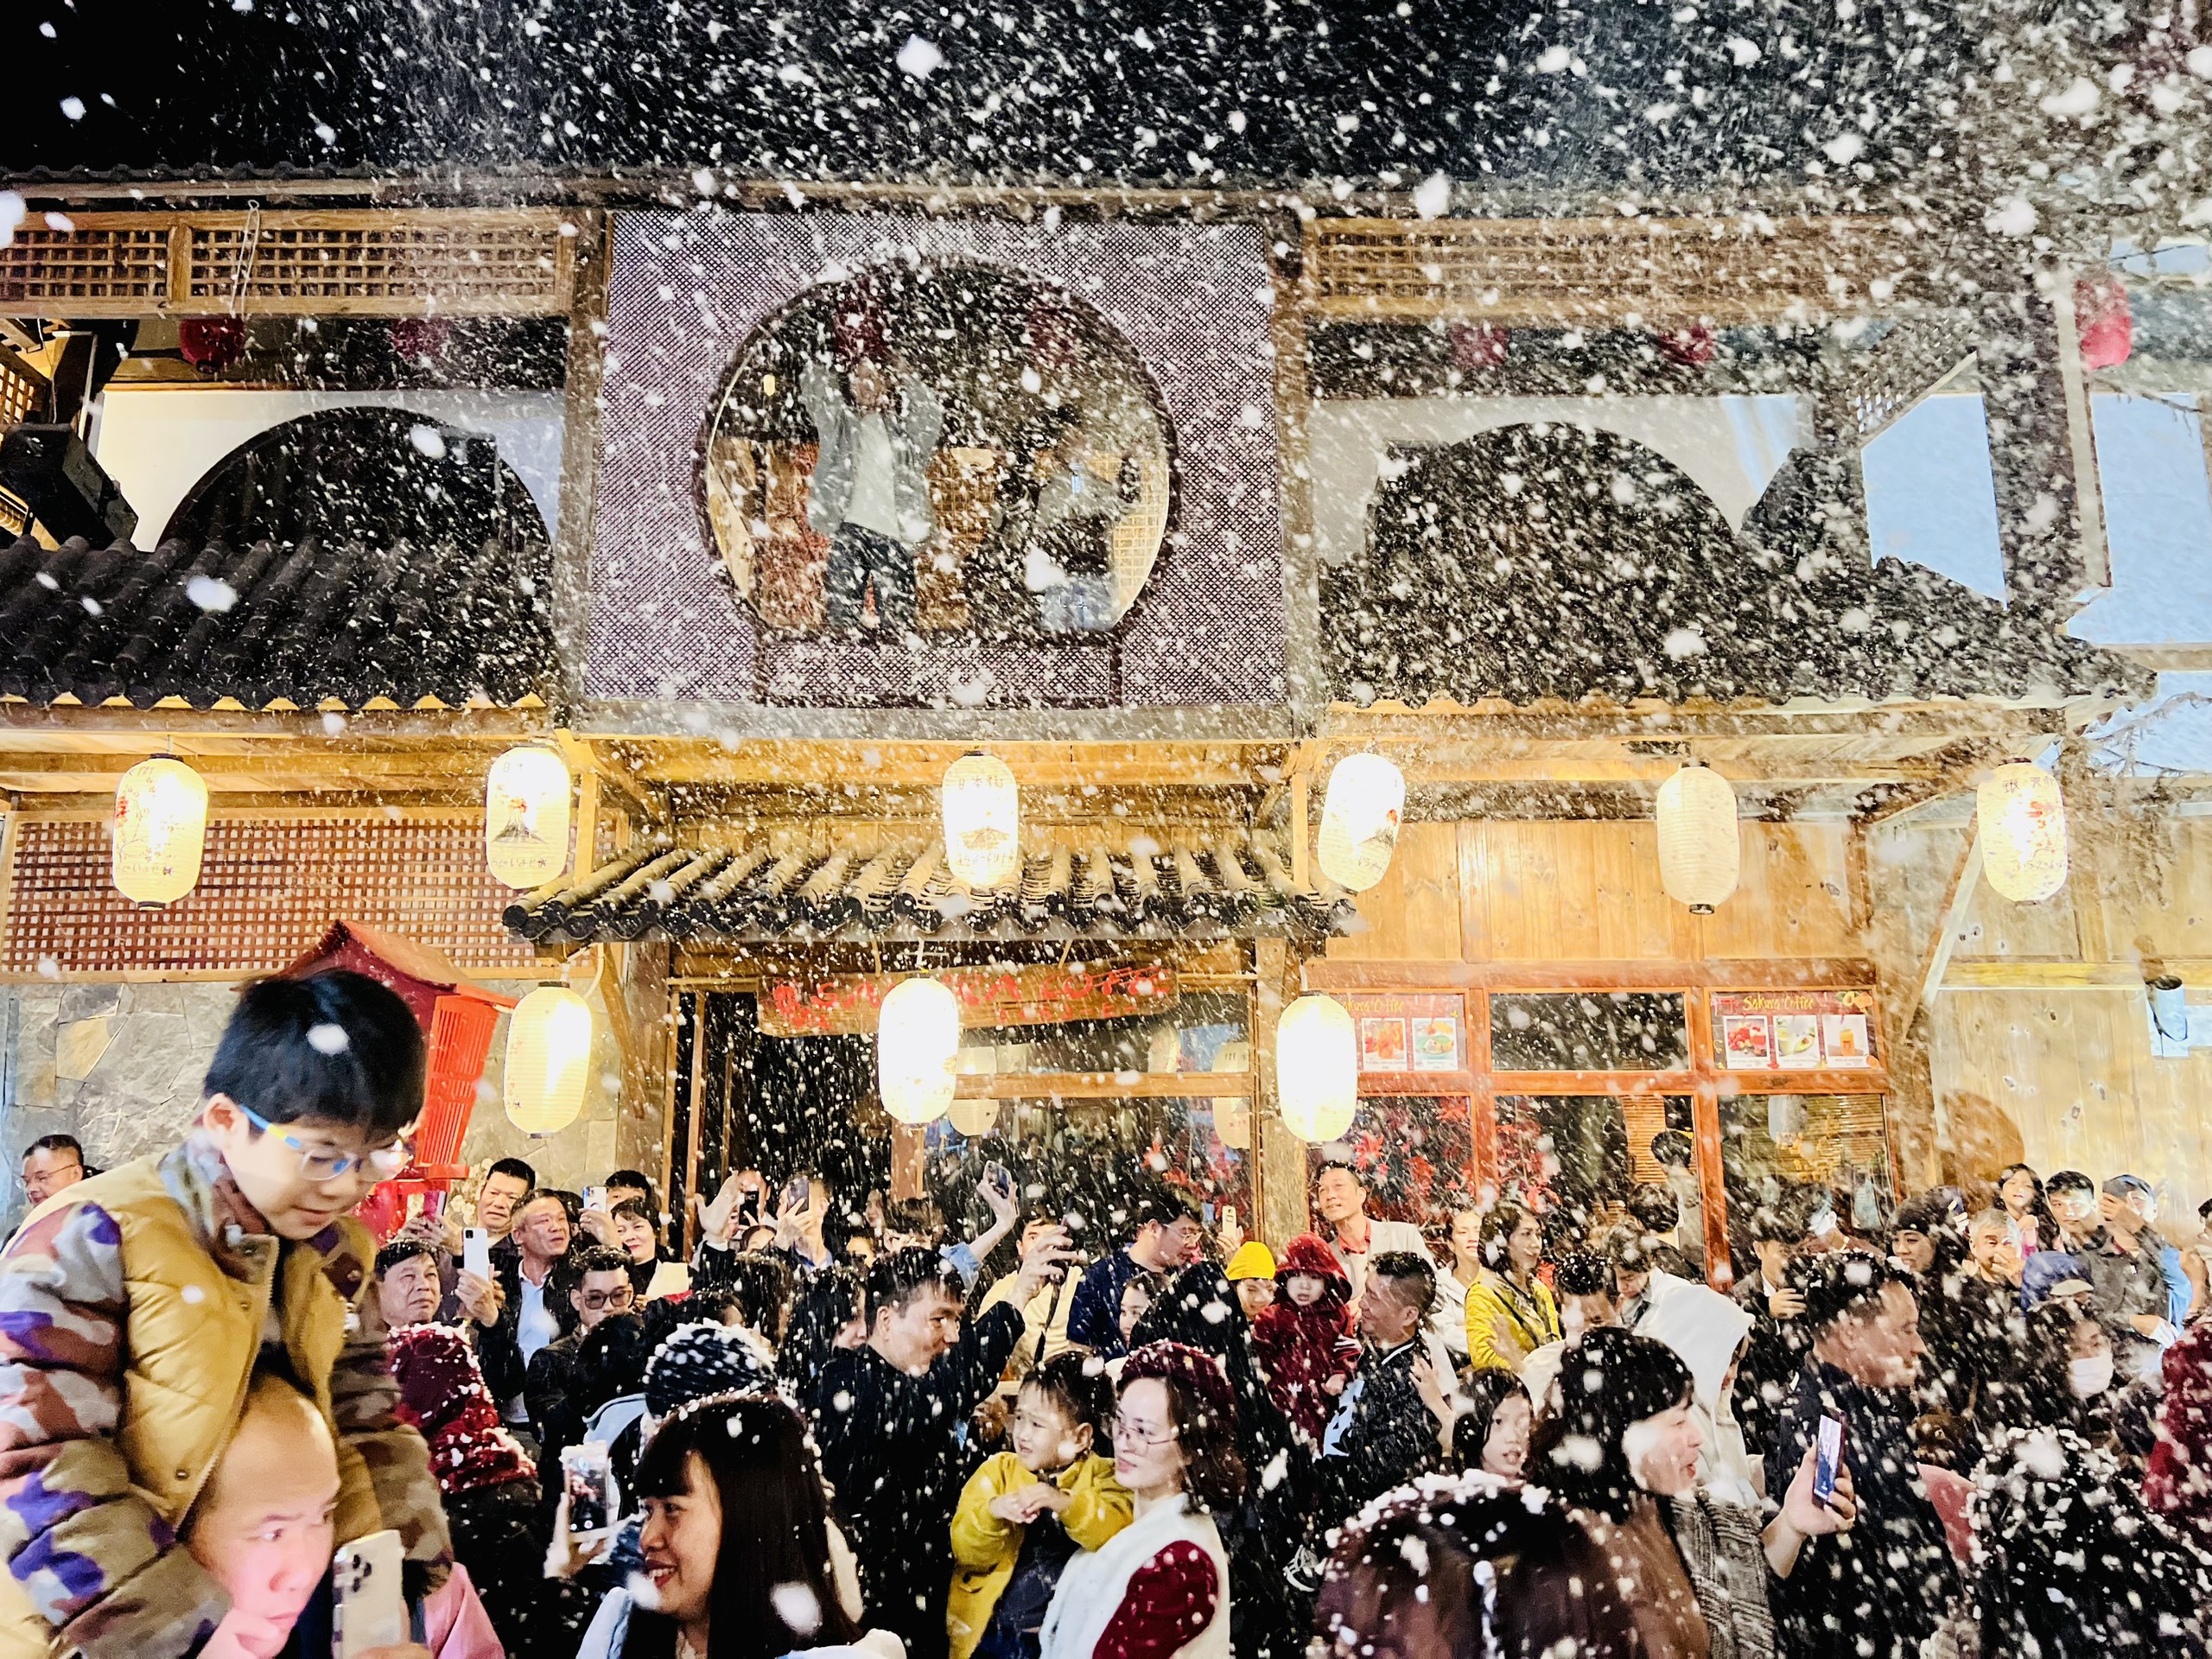 Rộn ràng đêm ở phố đi bộ Mộc Châu những ngày đầu năm mới- Ảnh 8.